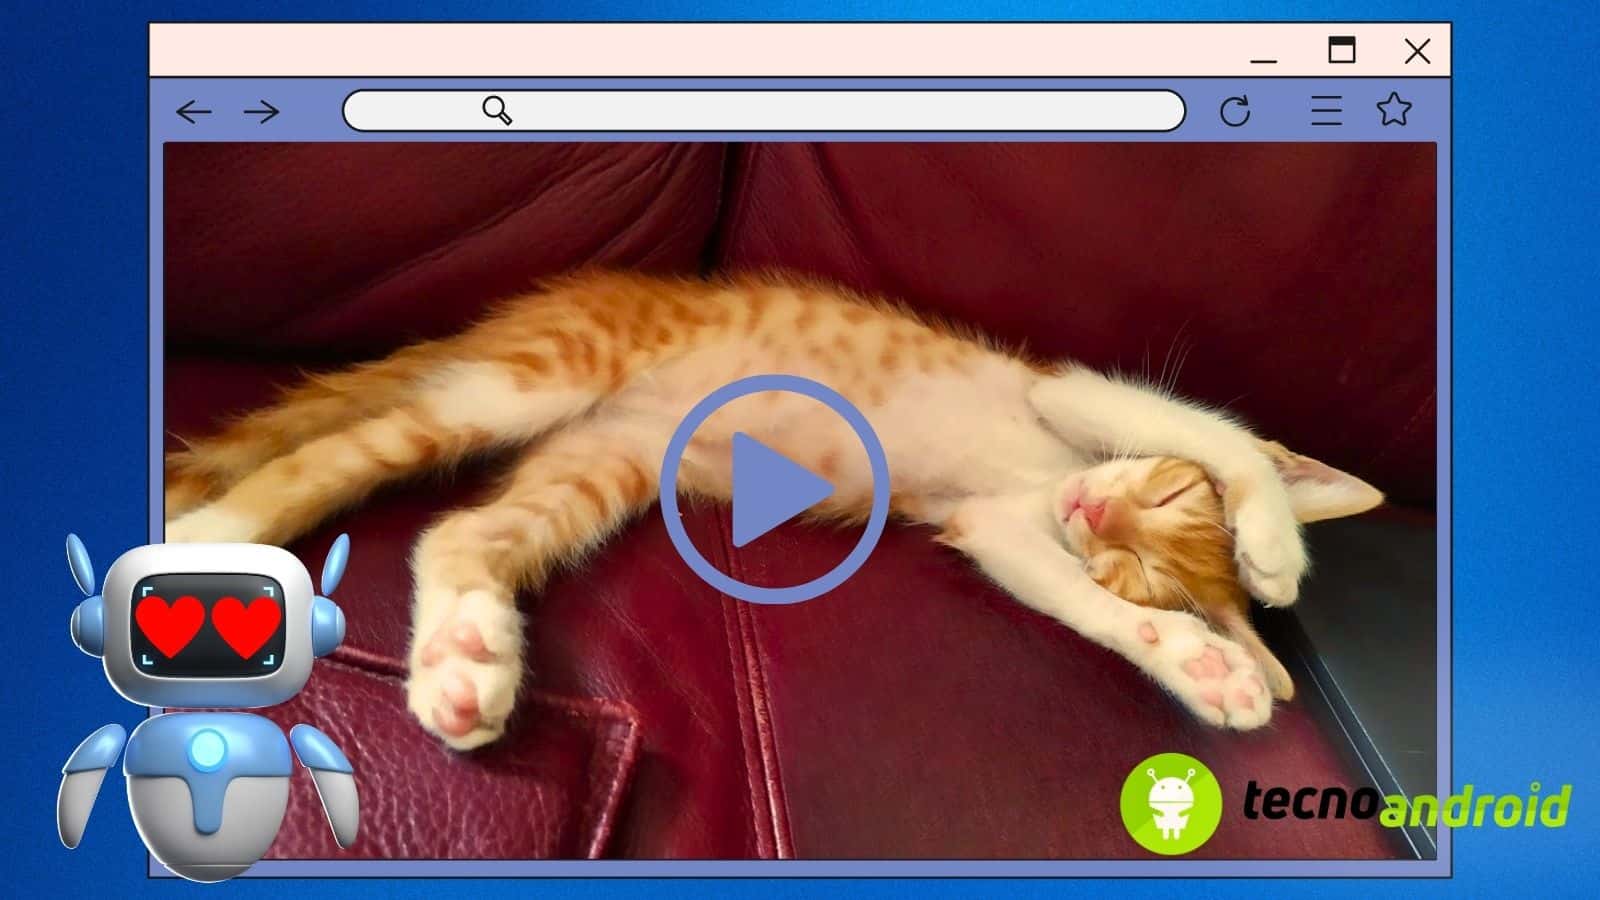 Intelligenza artificiale di OpenAI genera video di adorabili gattini